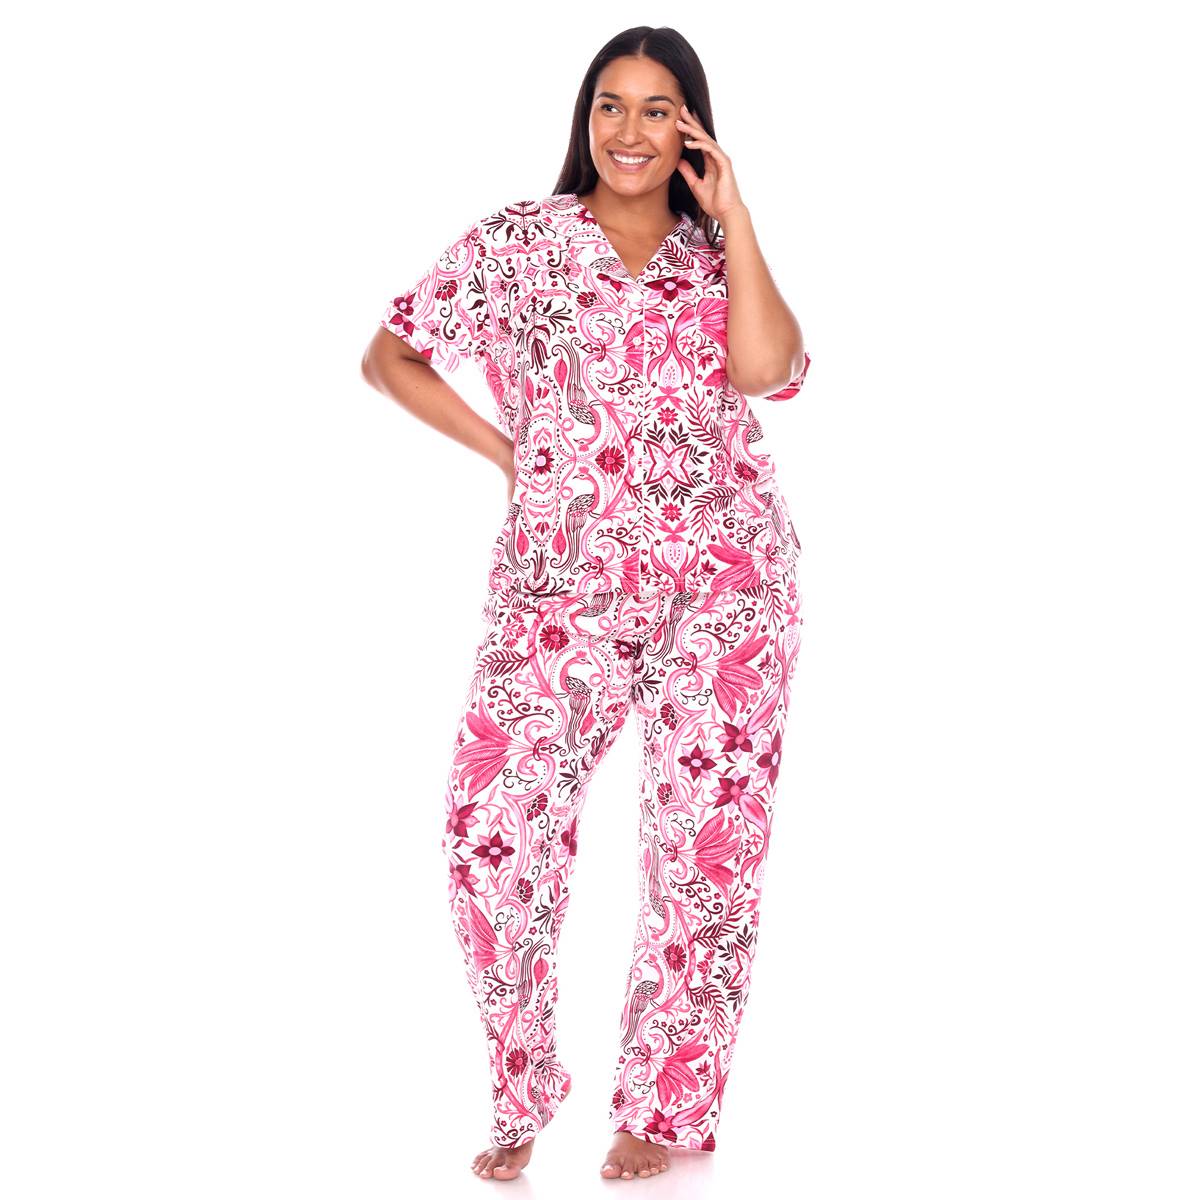 Plus Size White Mark 2pc. Short Sleeve Tropical Pajama Set